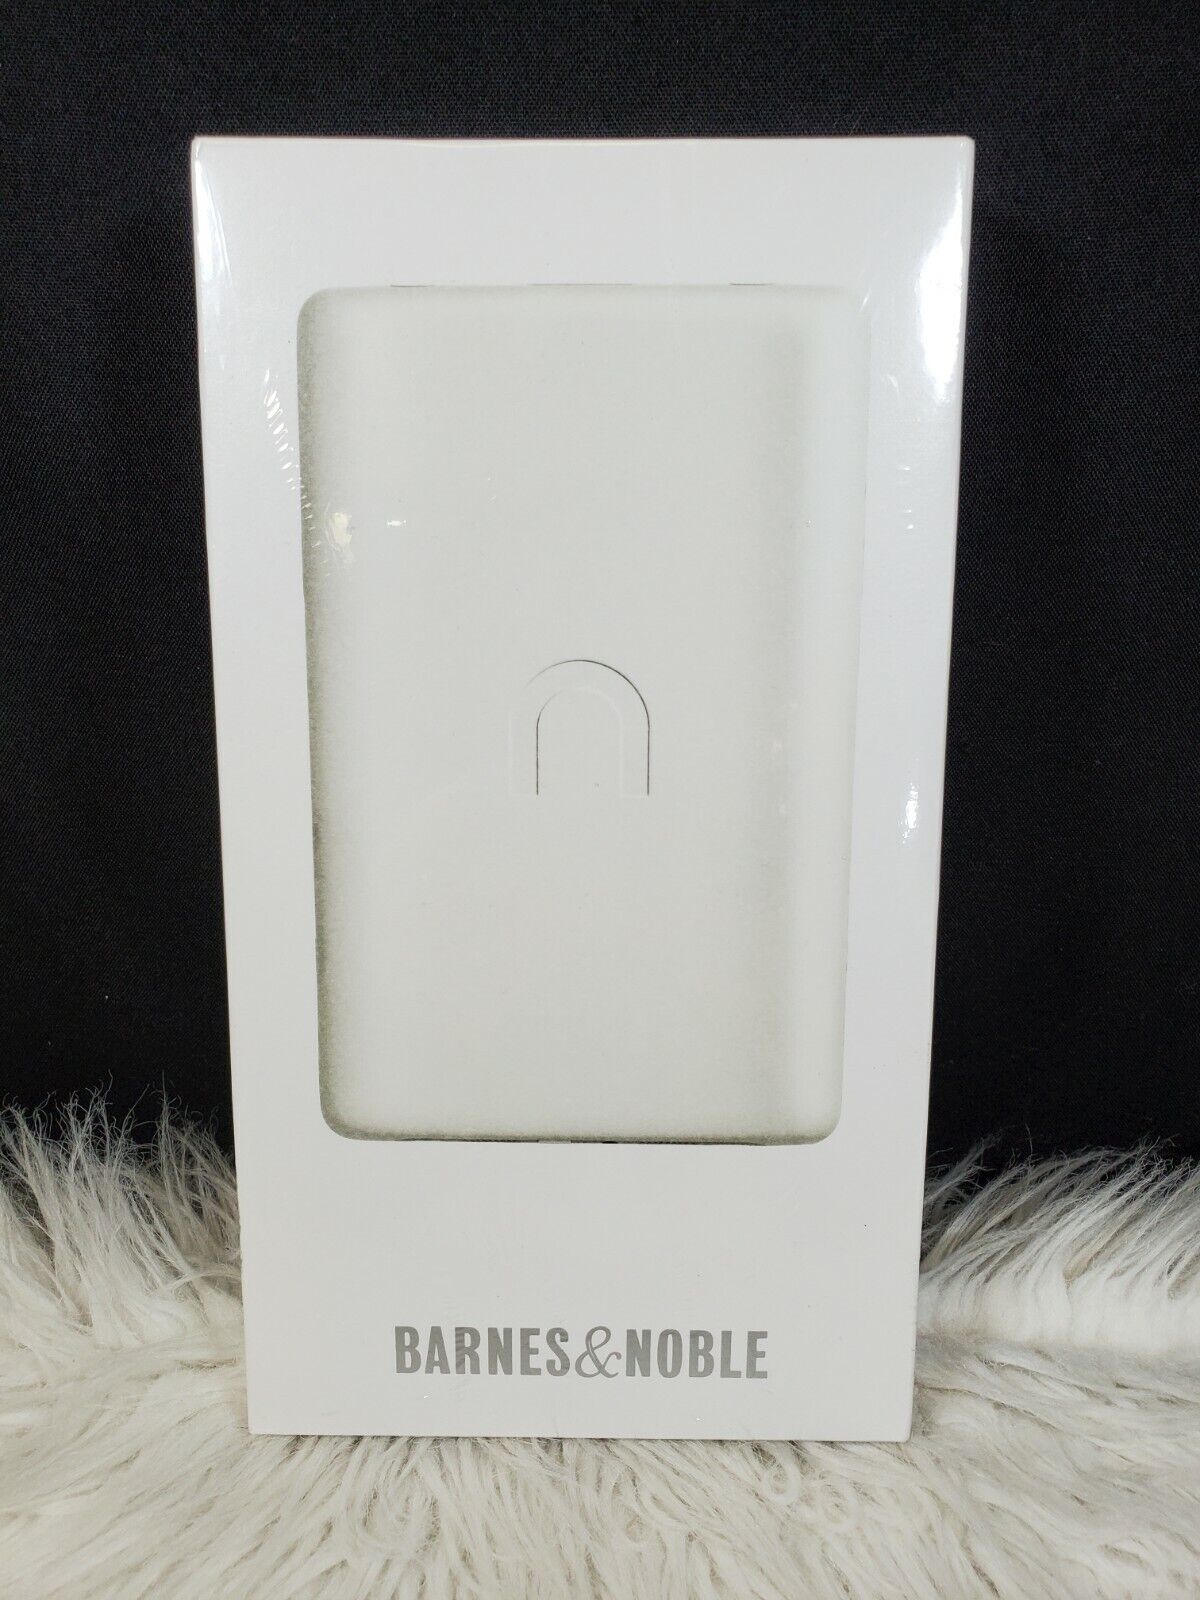 Barnes & Noble Nook WiFi eReader - White BNRV100 